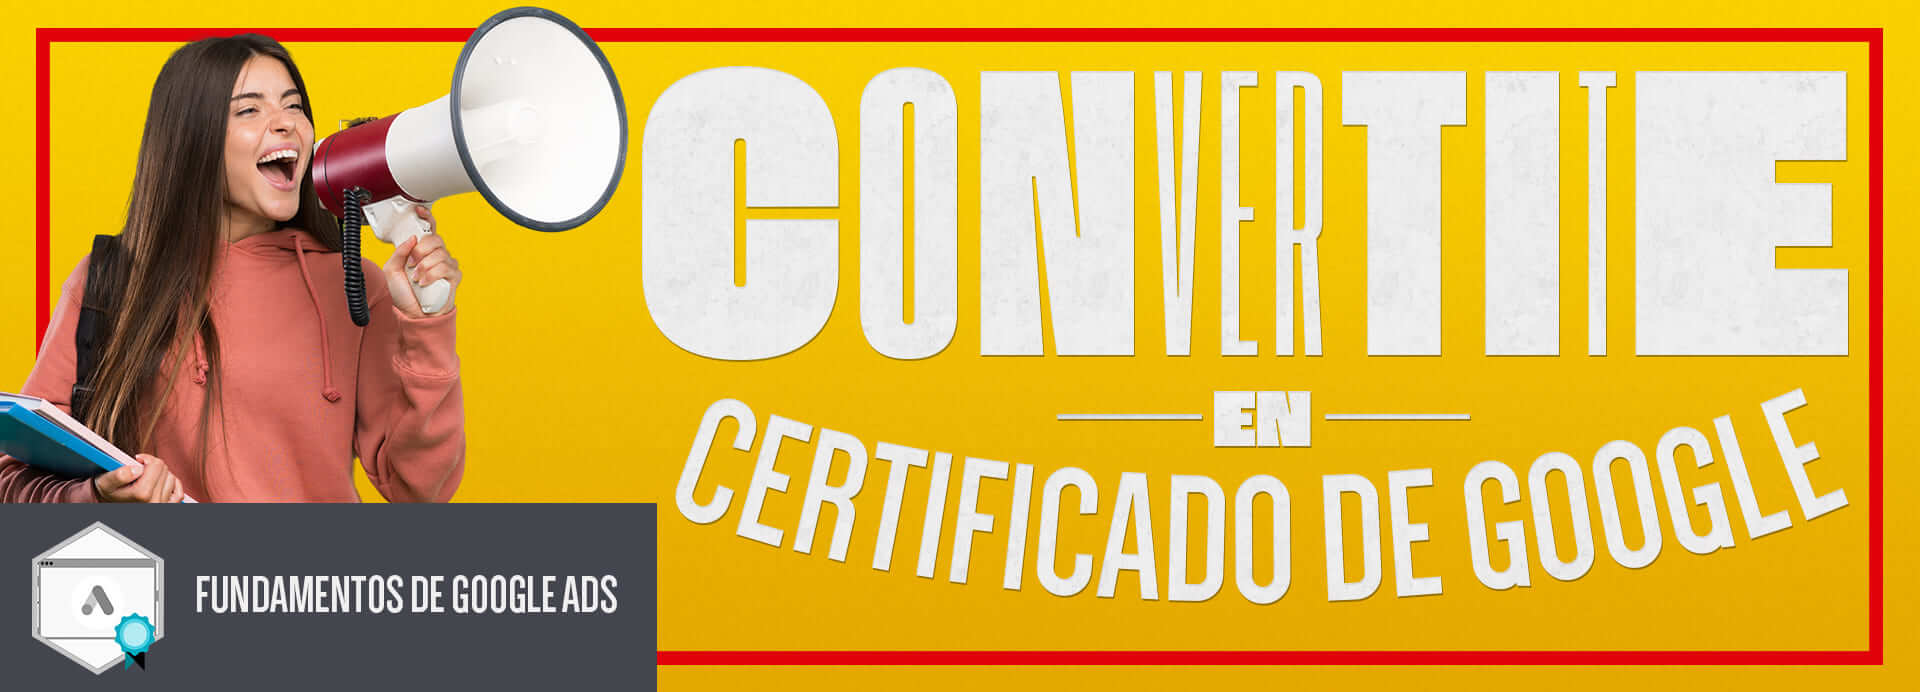 convertite_en_certificado_google